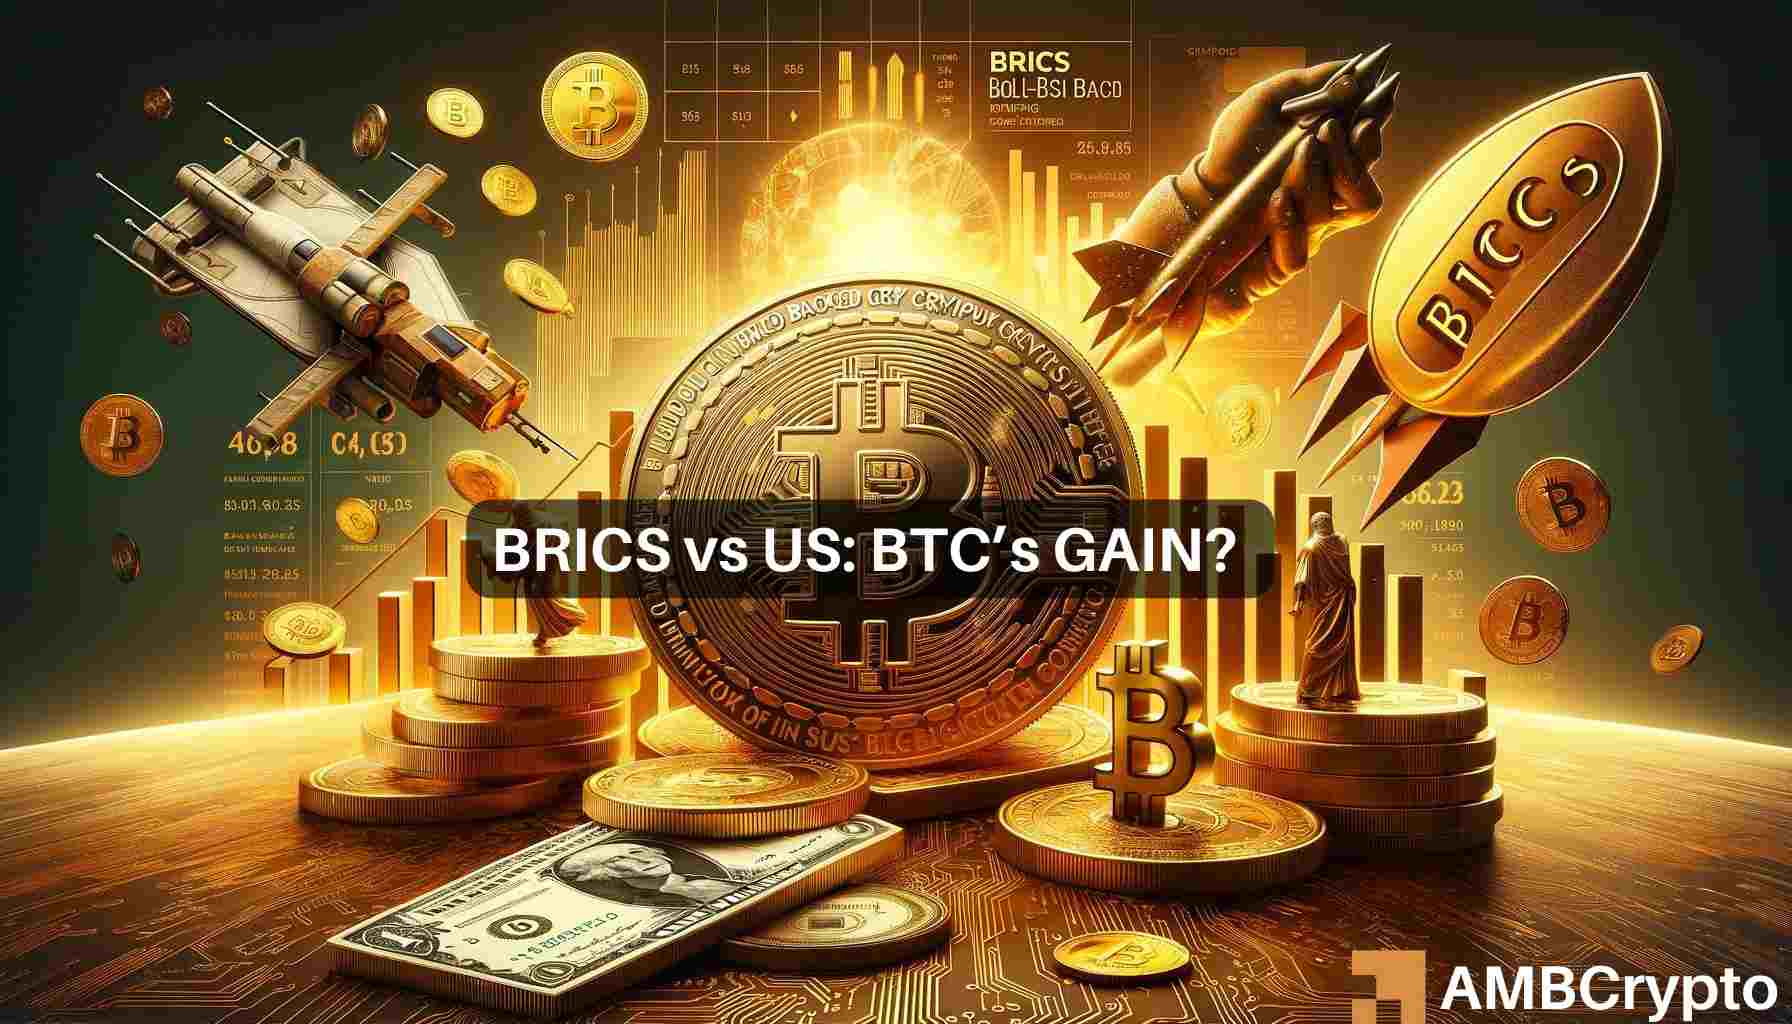 Buy Bitcoin – BRICS gold-backed crypto to ‘crash U.S. dollars:’ Robert Kiyosaki